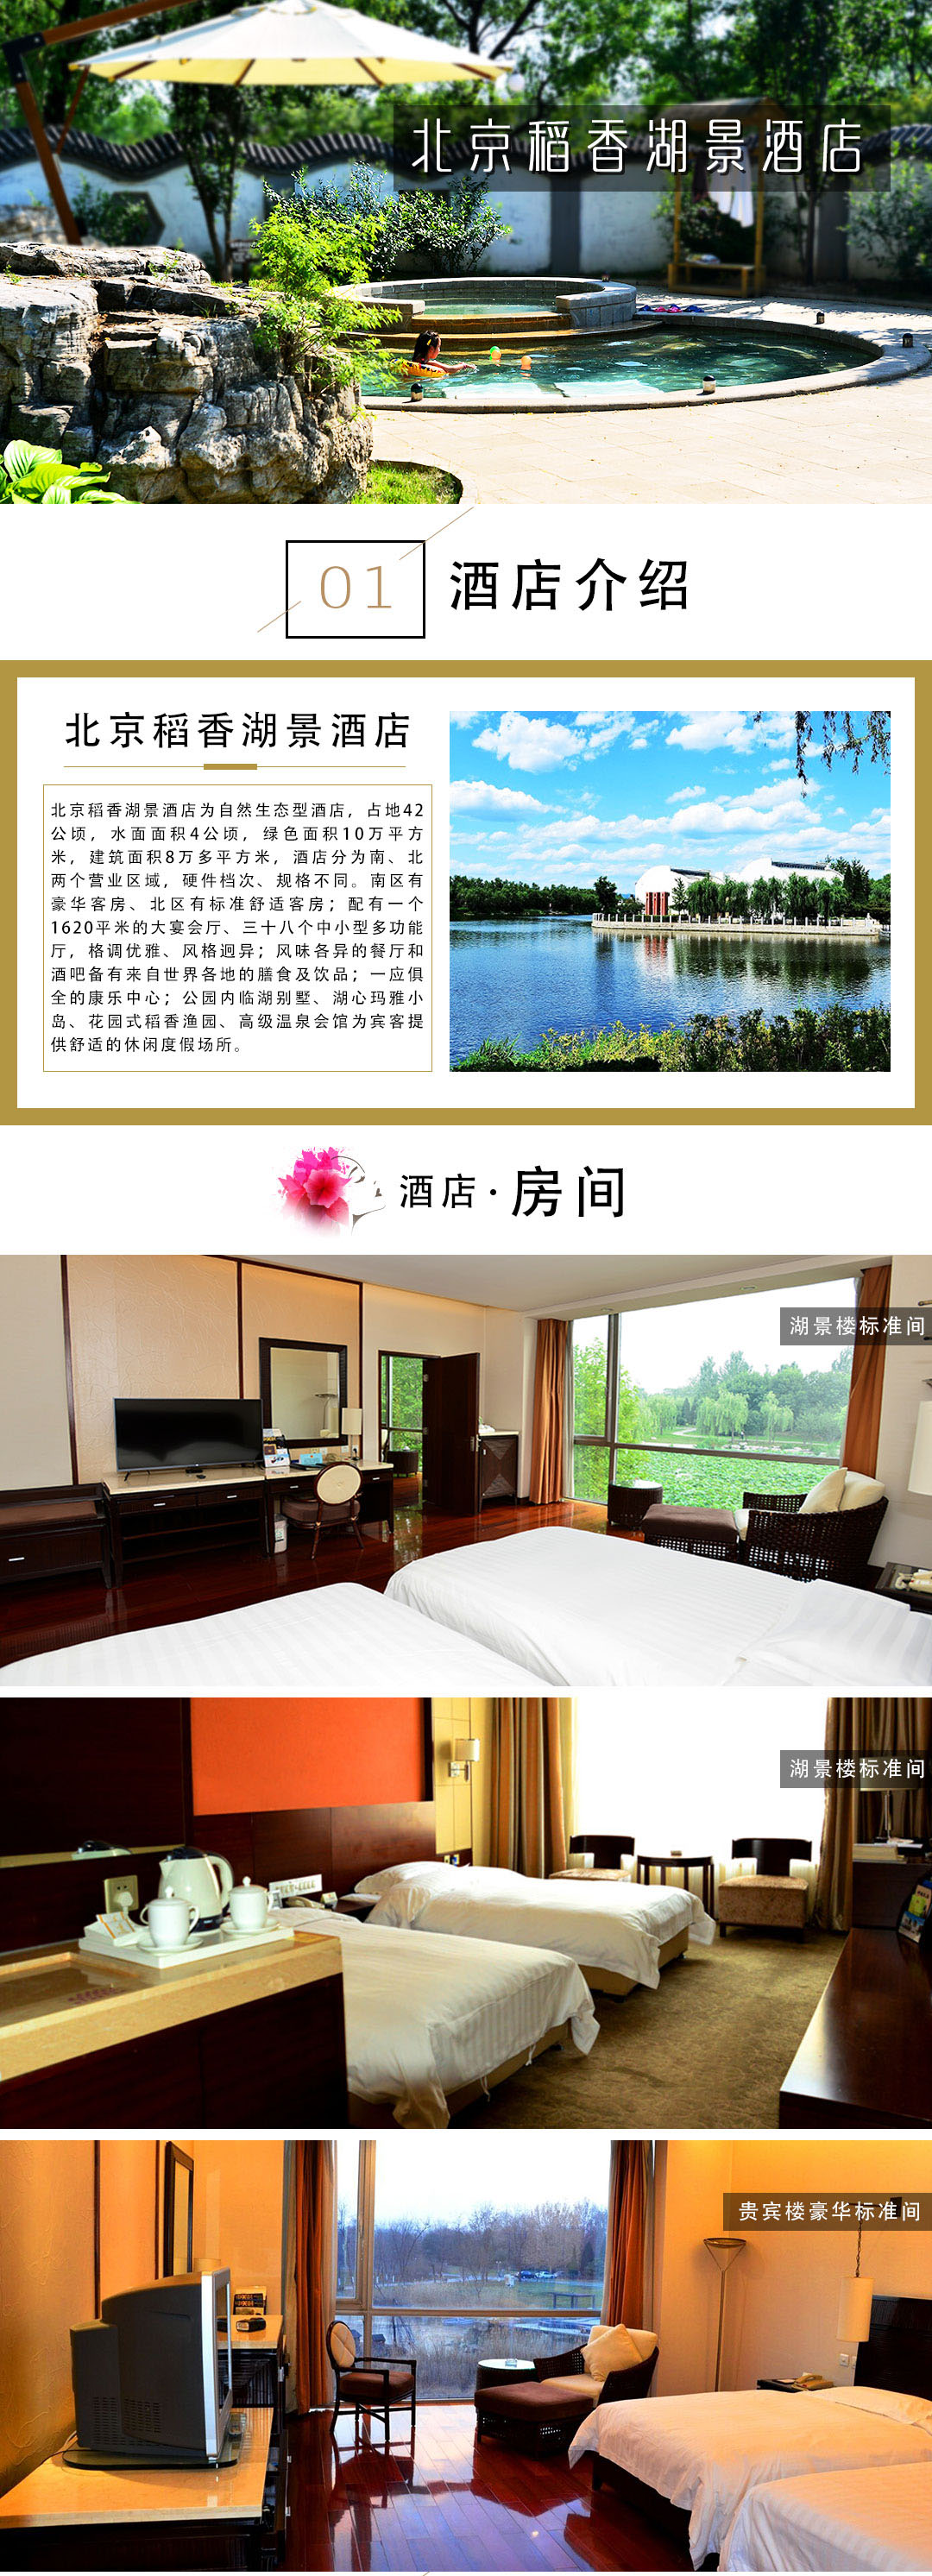 北京稻香湖景酒店 早餐 温泉门票/大美欢乐岛通票(2选